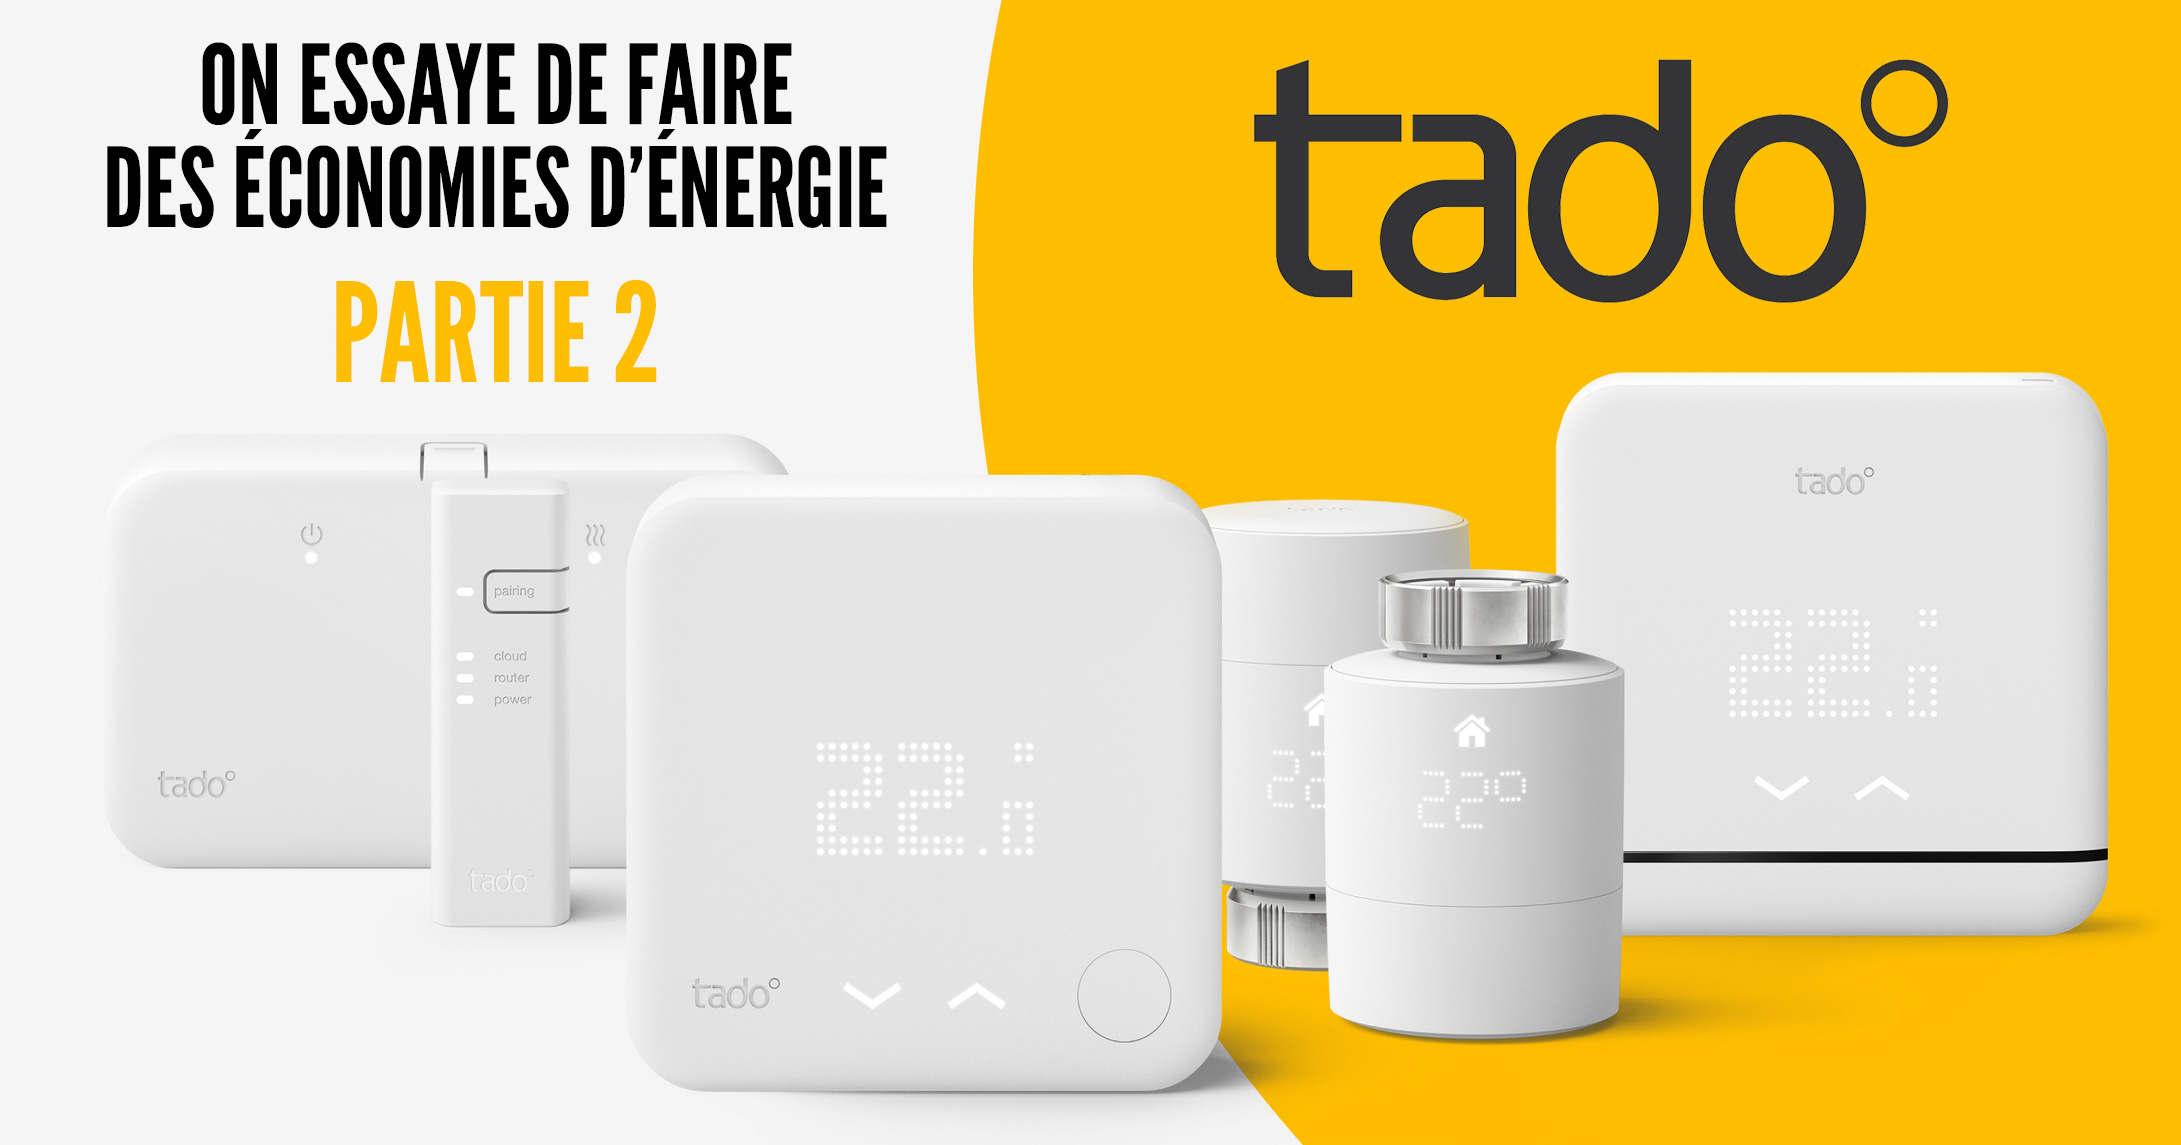 Tête thermostatique connectée connectée kit v3+ basic Tado